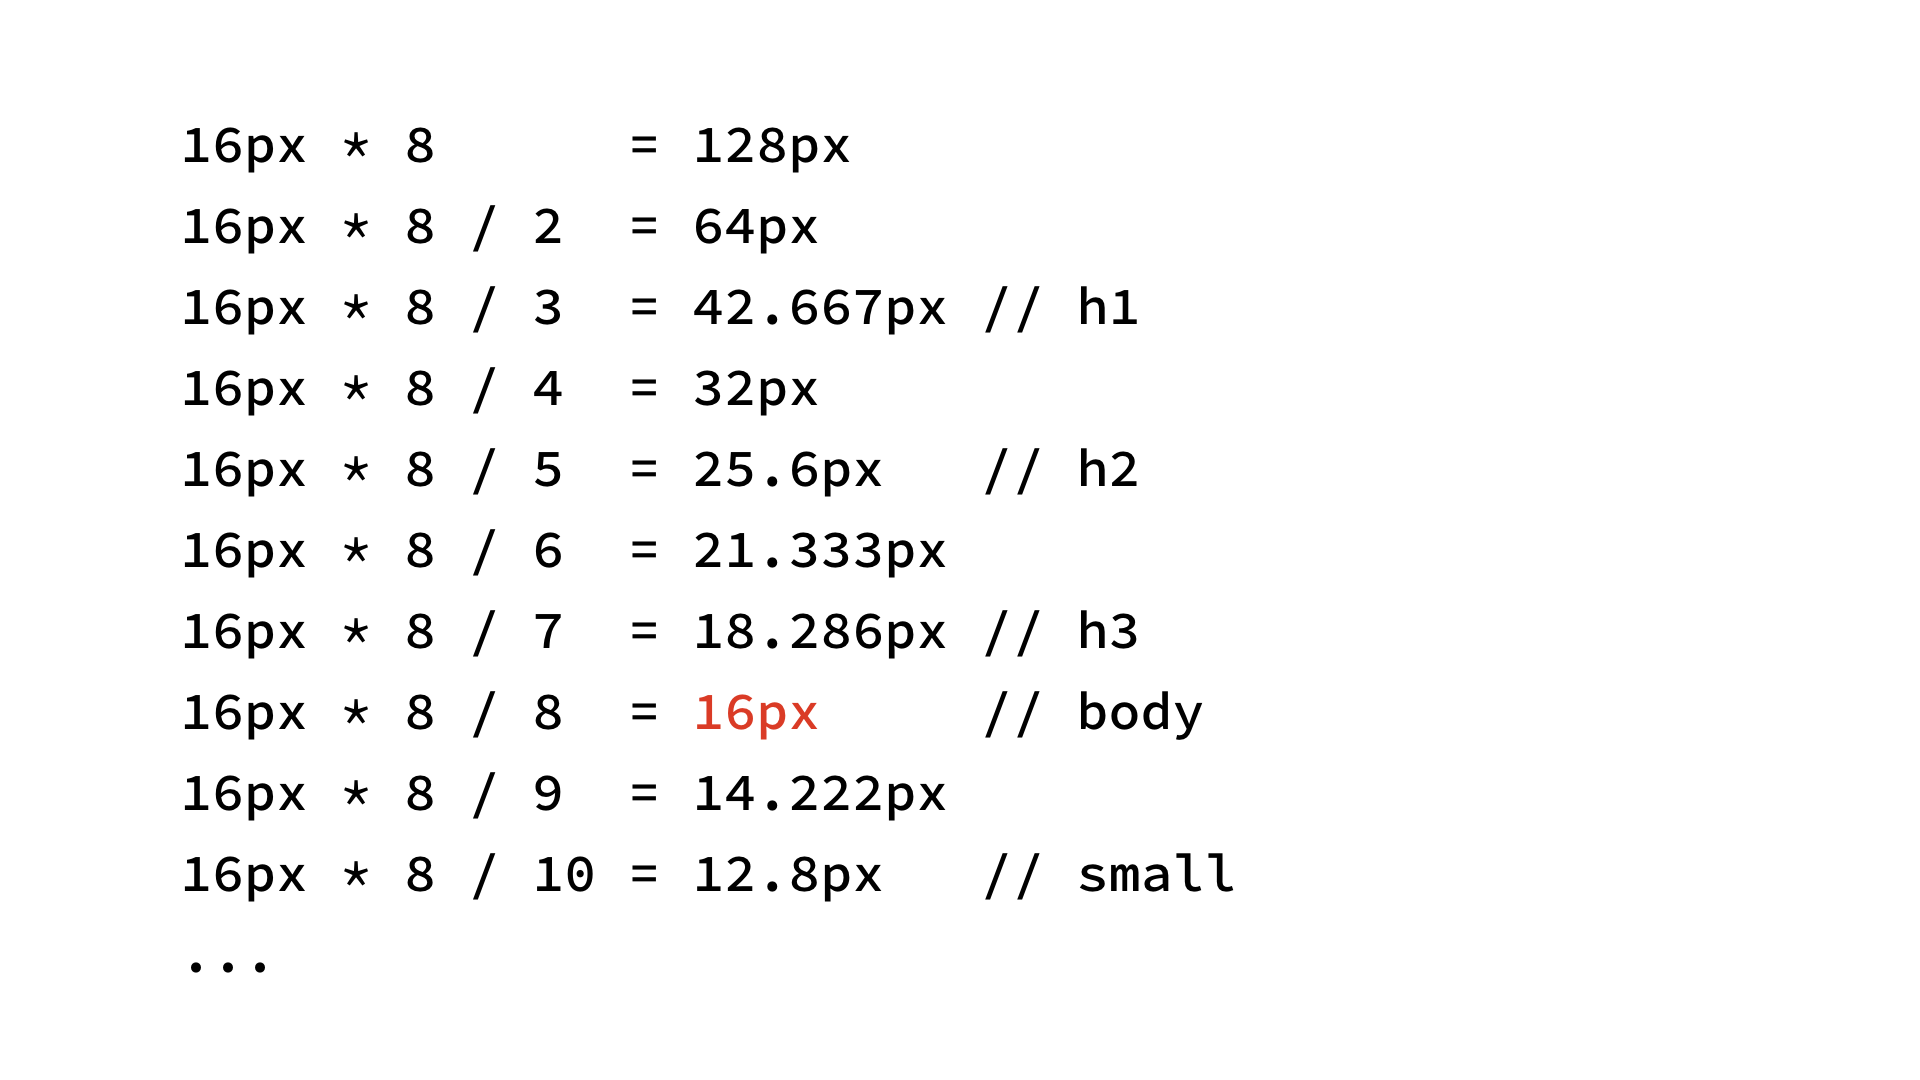 
16px * 8      = 128px;
16px * 8 / 2  = 64px;
16px * 8 / 3  = 42.667px (h1);
16px * 8 / 4  = 32px;
16px * 8 / 5  = 25.6px   (h2);
16px * 8 / 6  = 21.333px;
16px * 8 / 7  = 18.286px (h3);
16px * 8 / 8  = 16px     (body);
16px * 8 / 9  = 14.222px;
16px * 8 / 10 = 12.8px   (small);
...